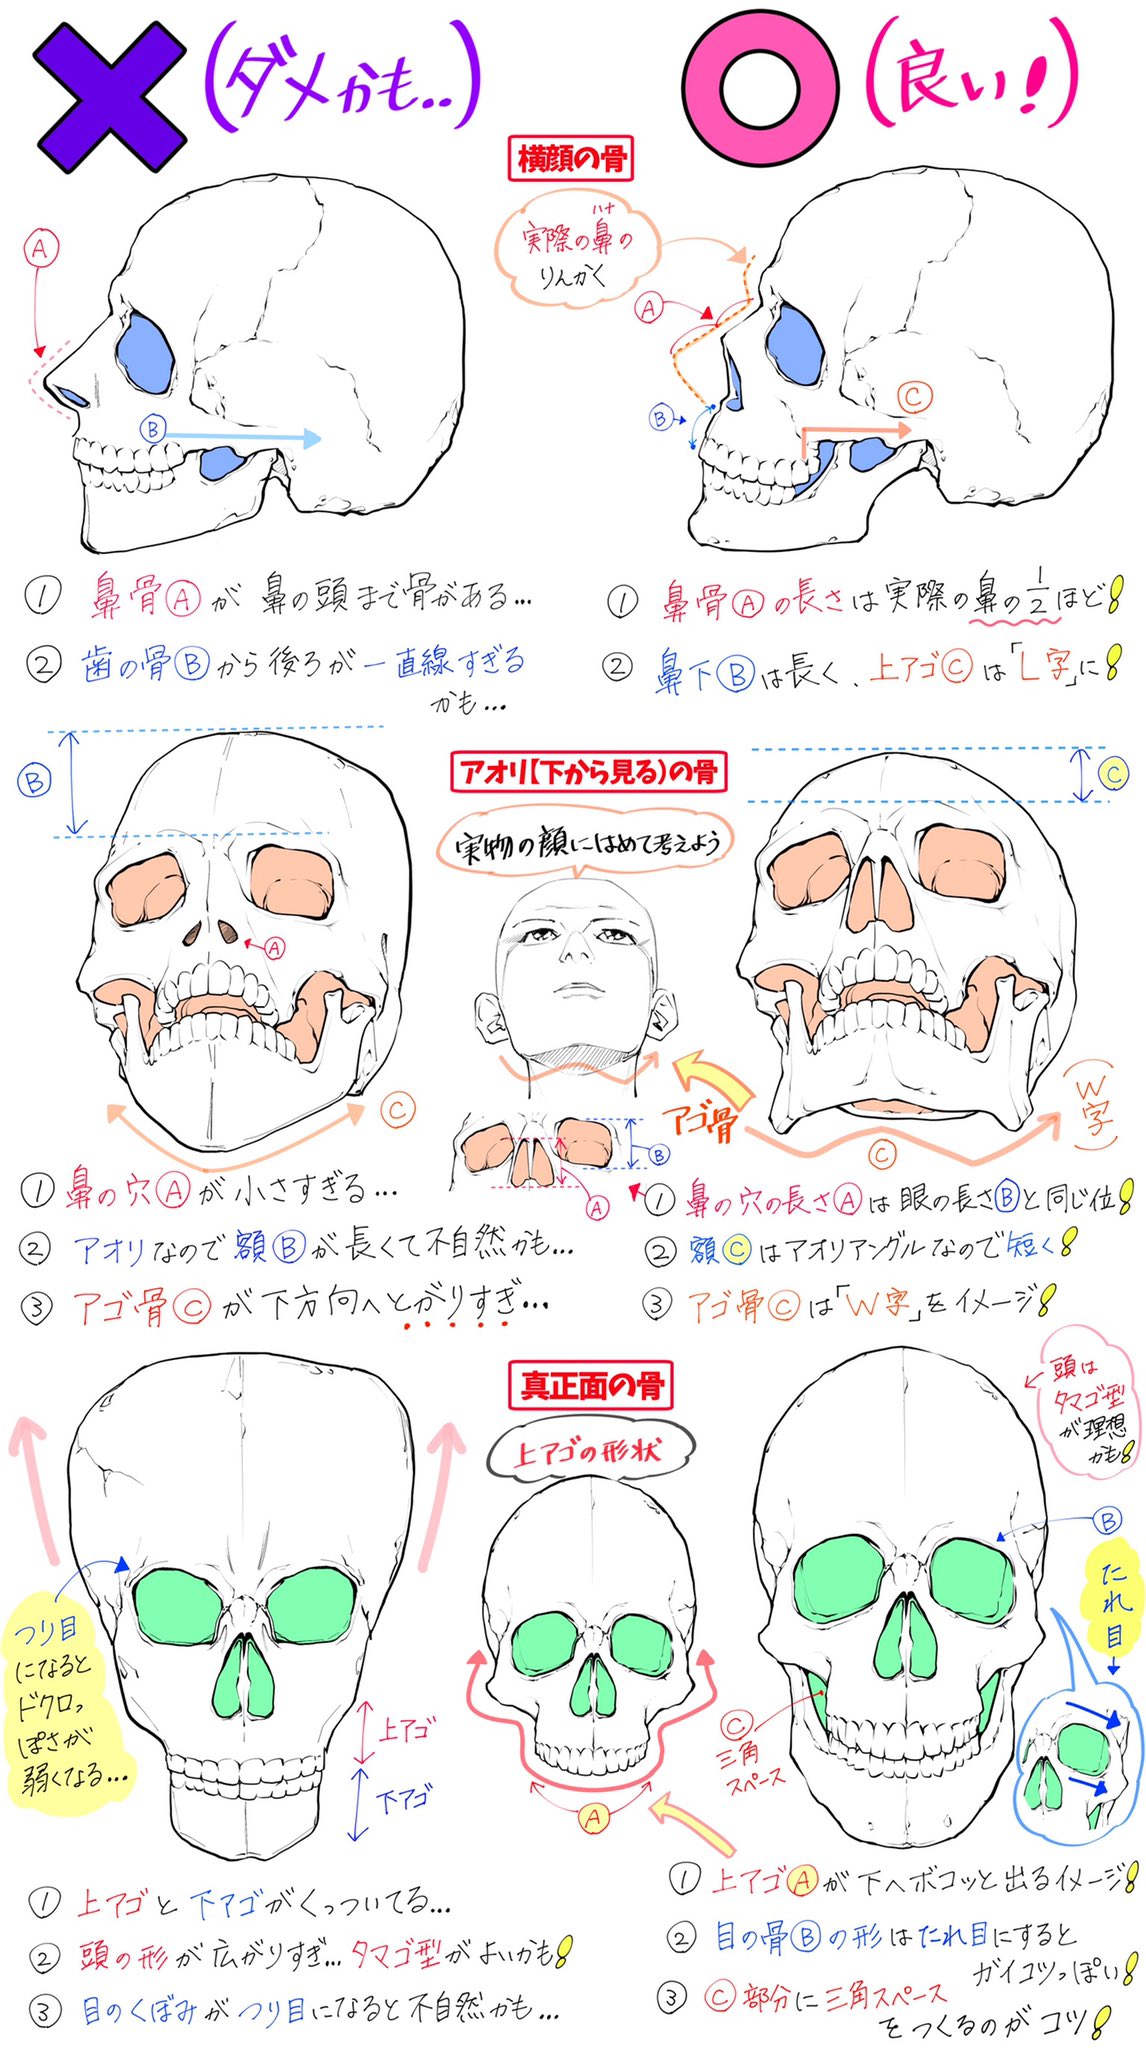 吉村拓也 イラスト講座 骸骨の描き方 骨の角度やドクロ絵 が上達する ダメかも と 良いかも T Co Zgxrisexuf Twitter